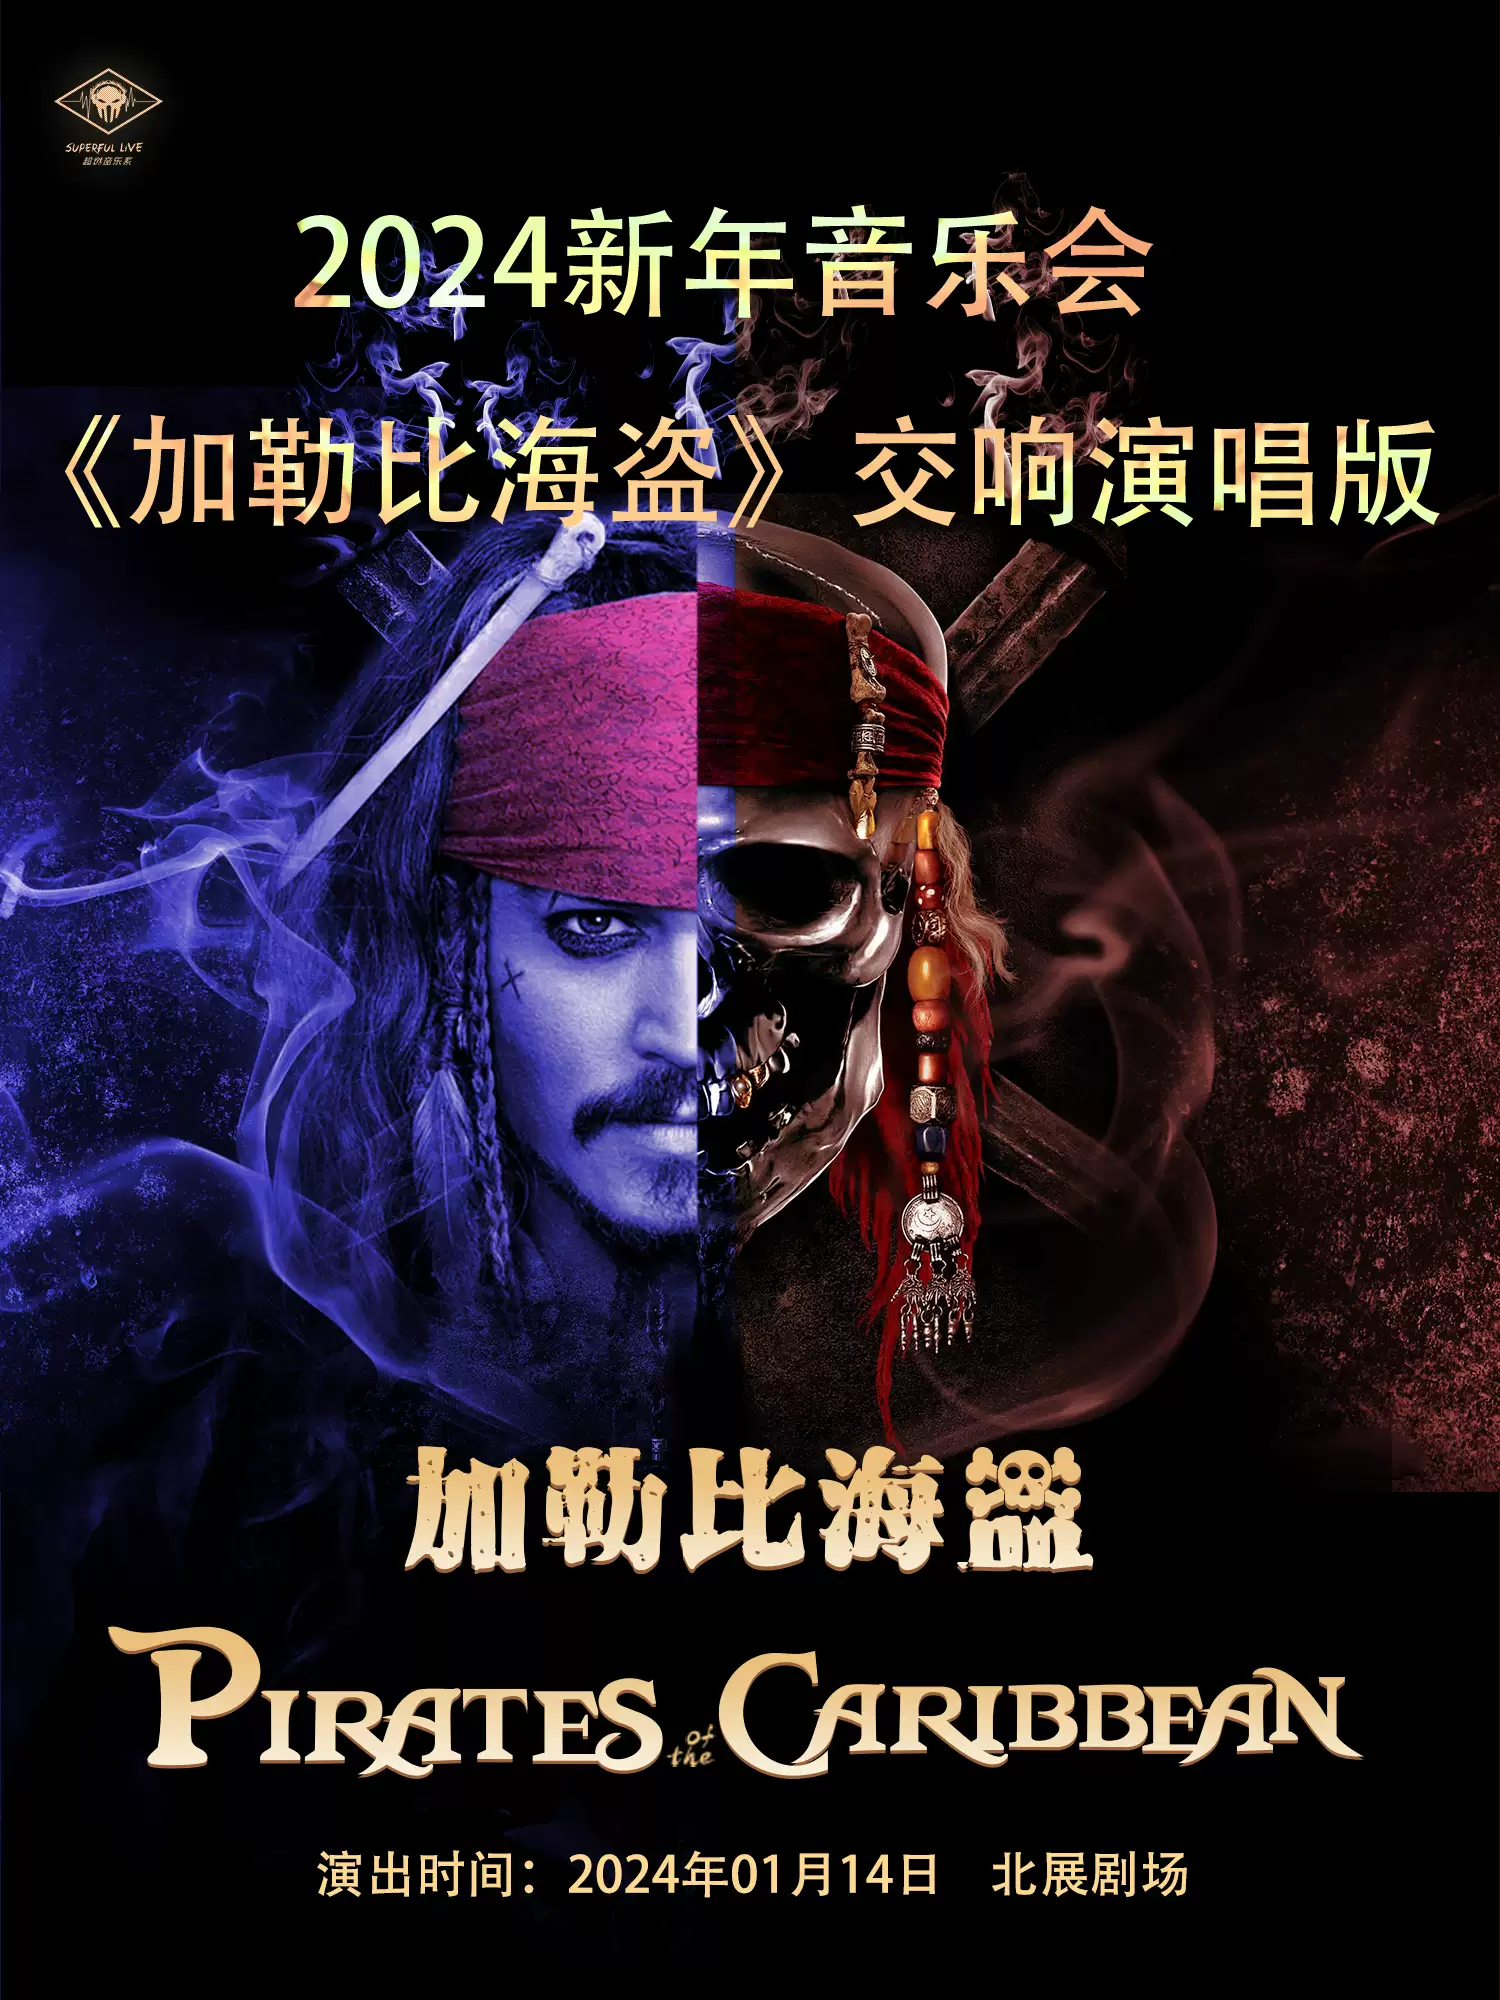 北京新年音乐会《加勒比海盗》交响演唱版